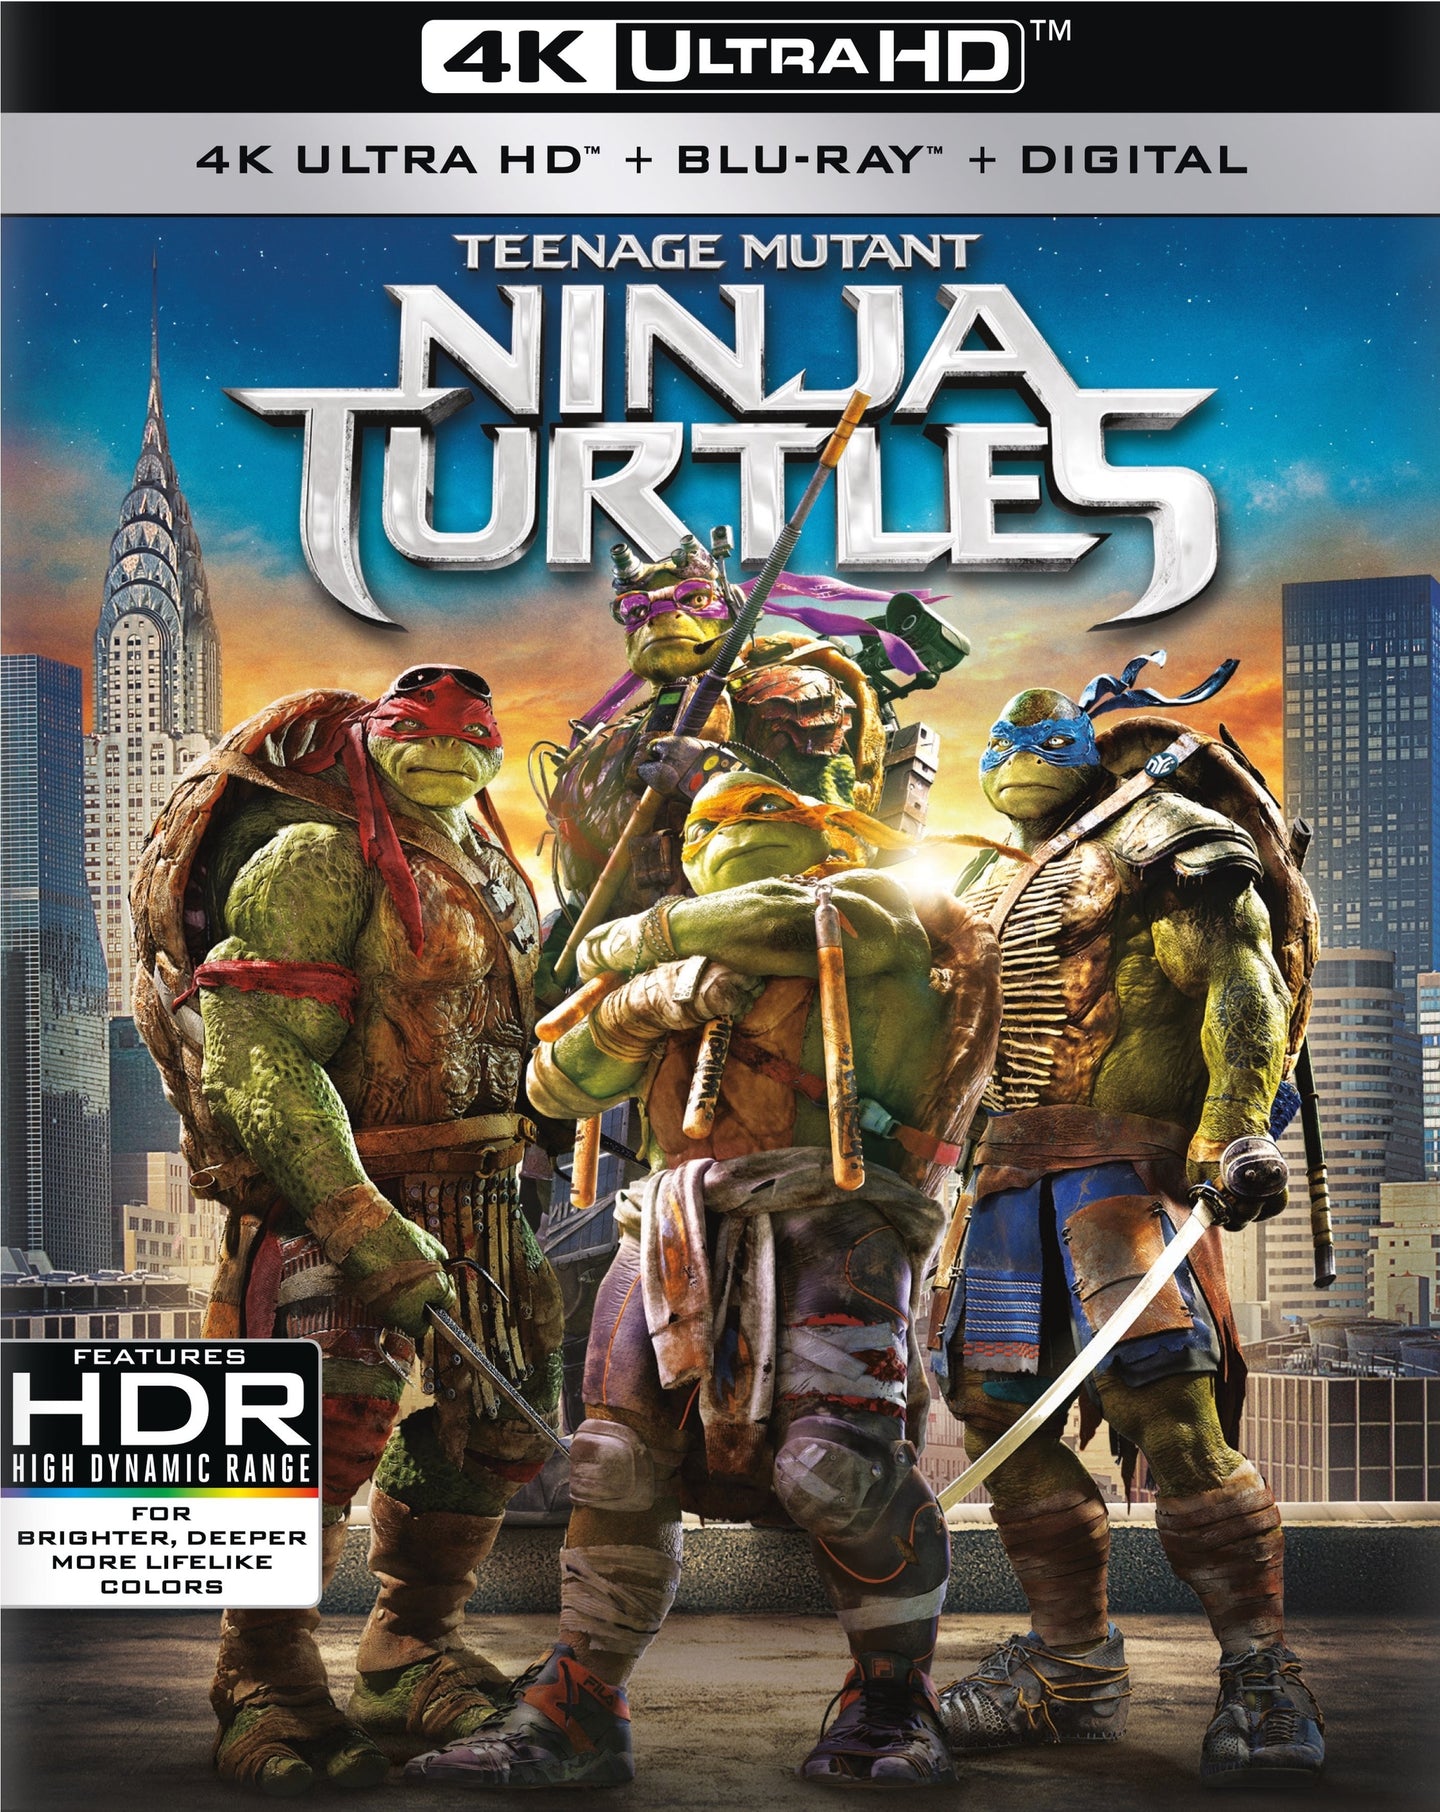 Teenage Mutant Ninja Turtles (2014) Vudu 4K or iTunes 4K code